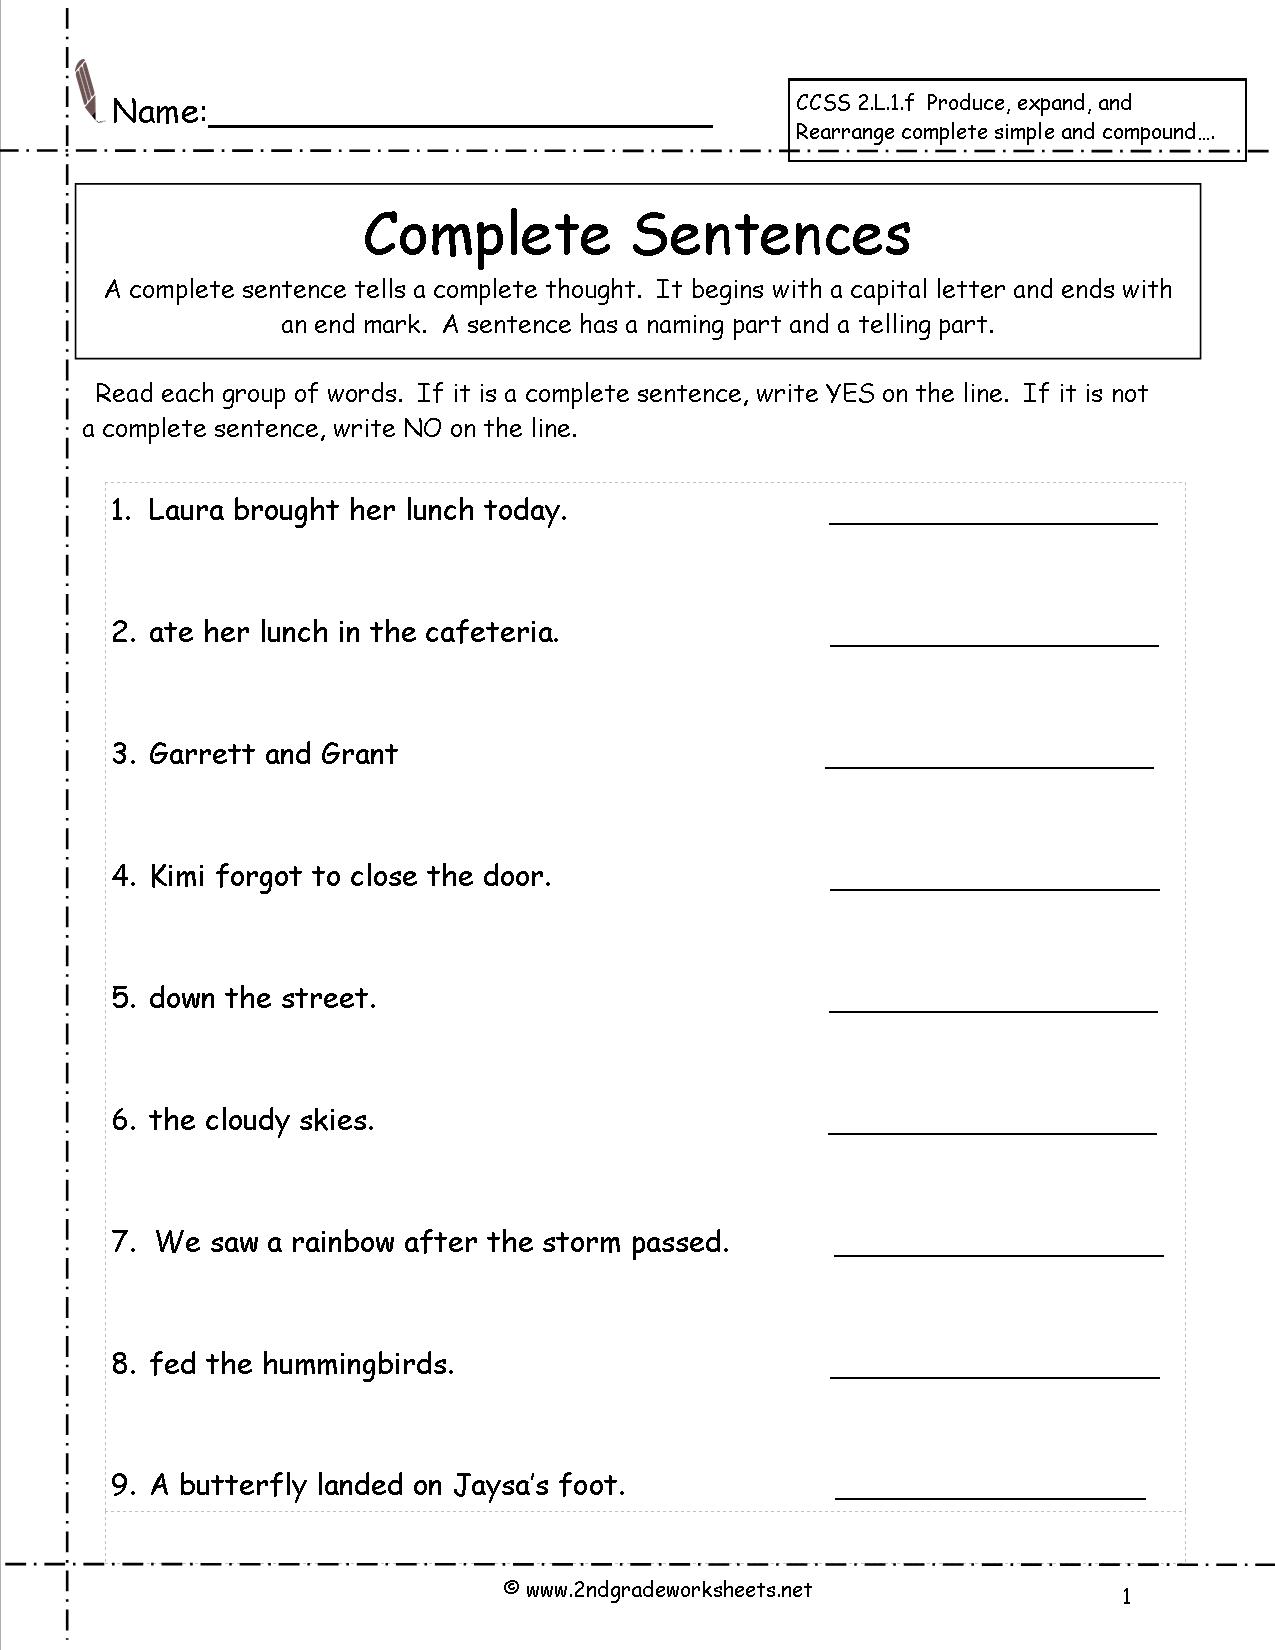 word-order-in-sentences-worksheets